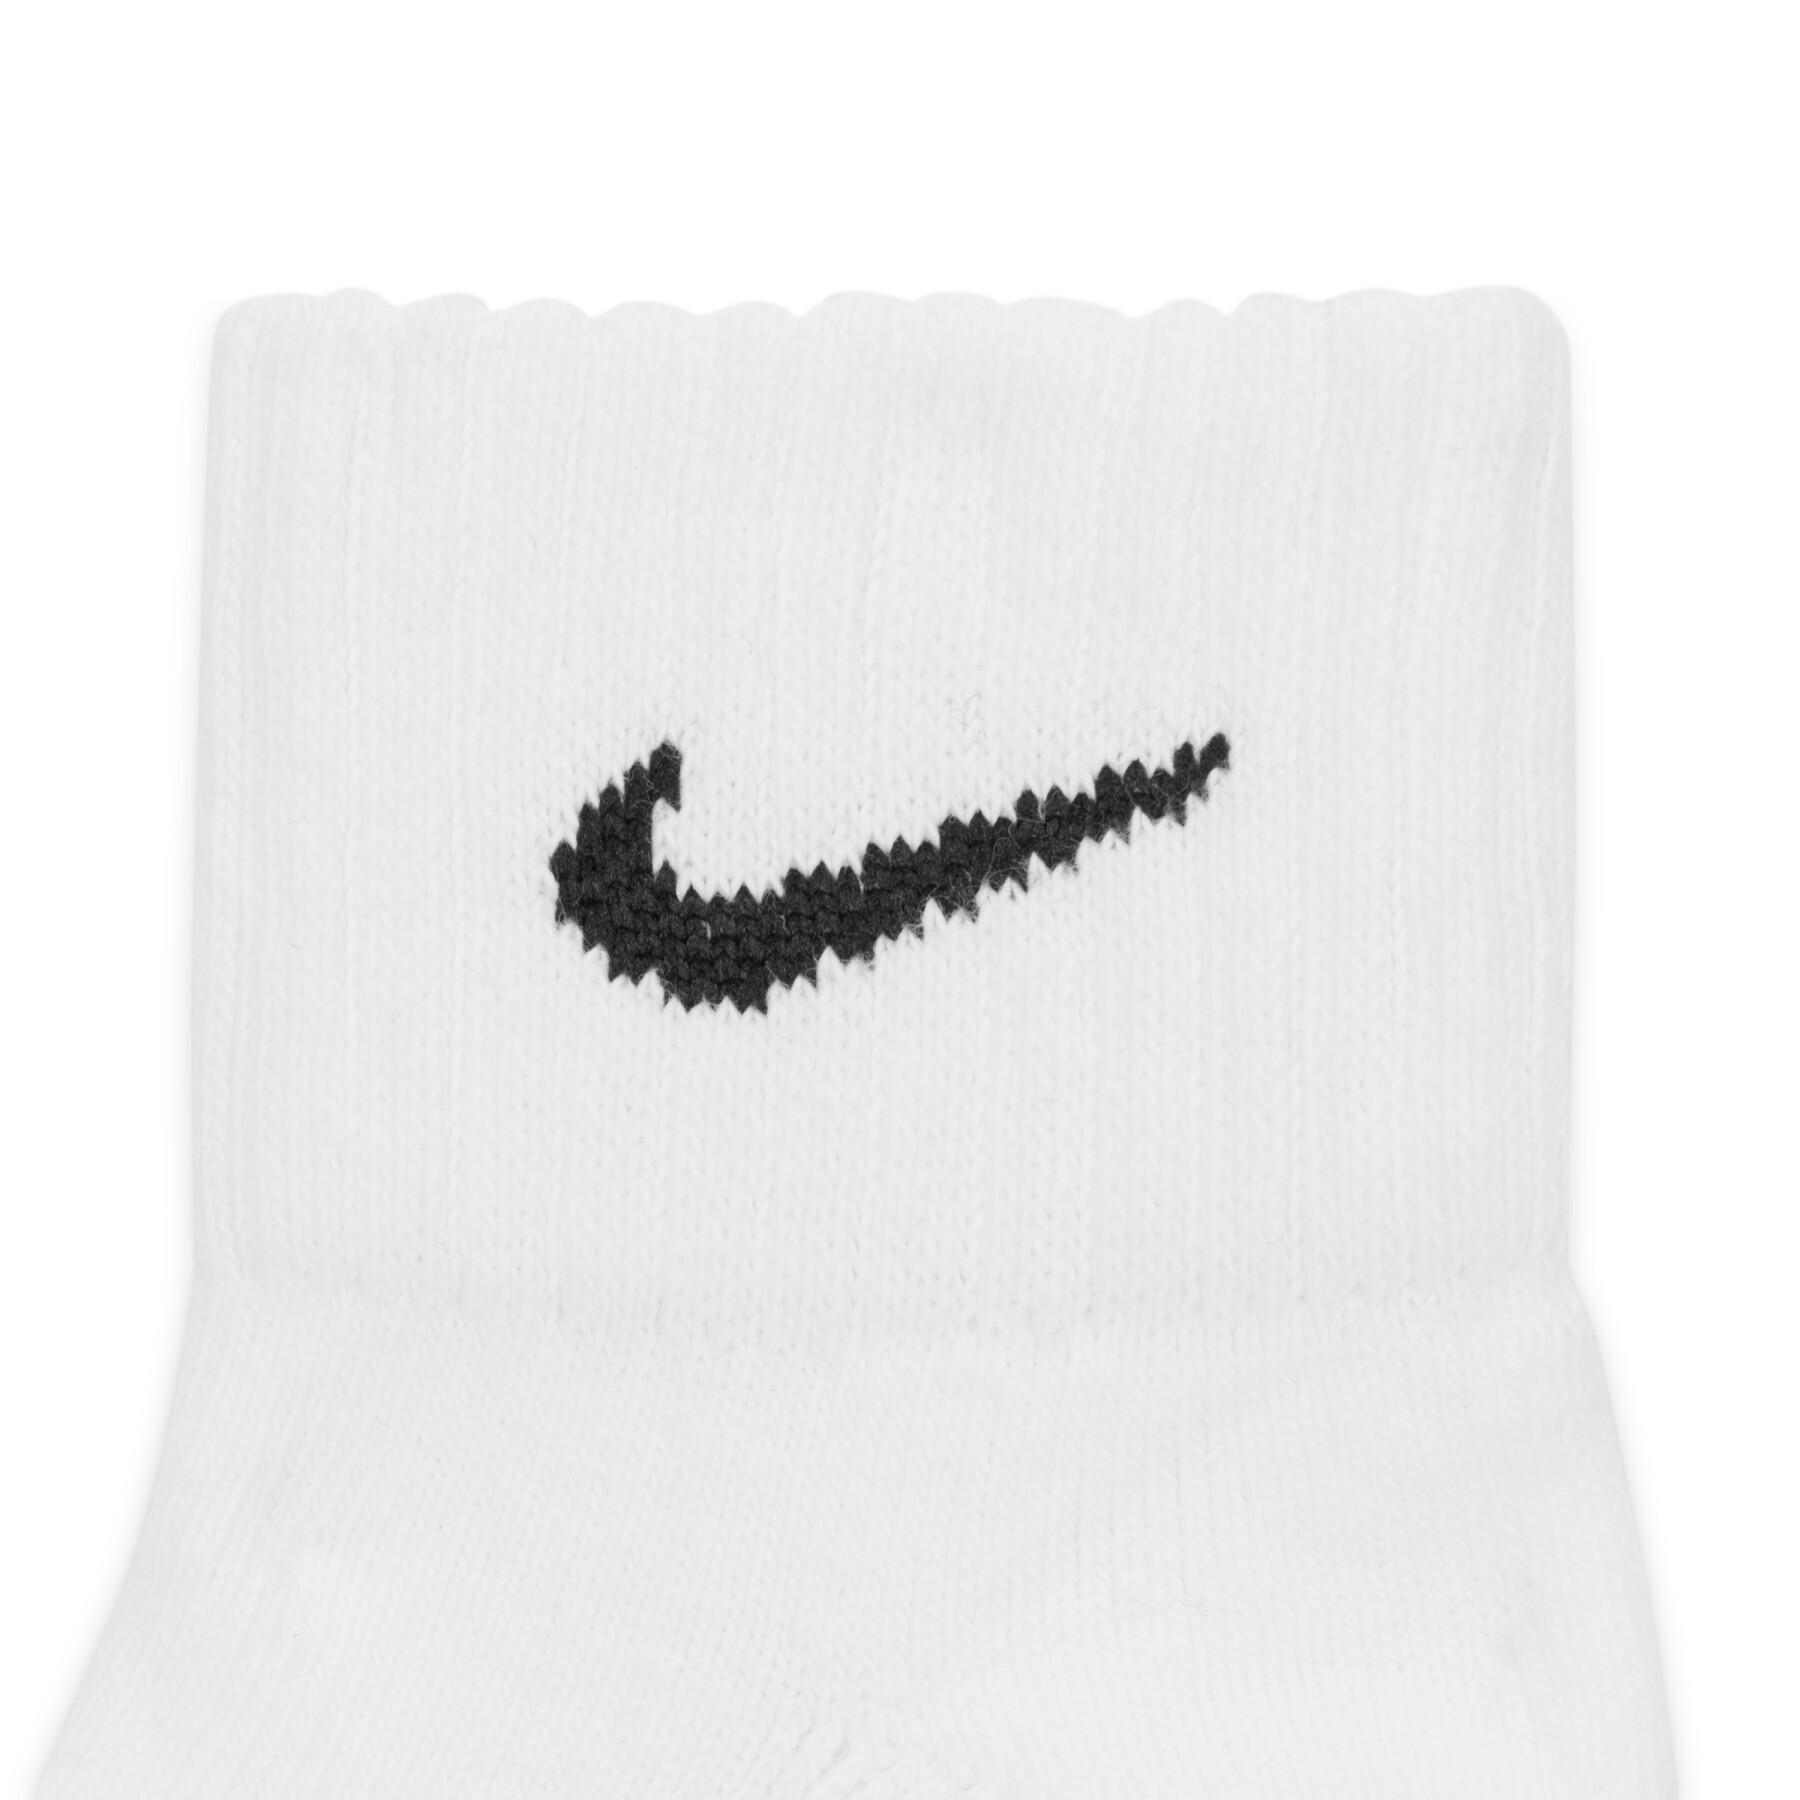 Socken Nike Cushion